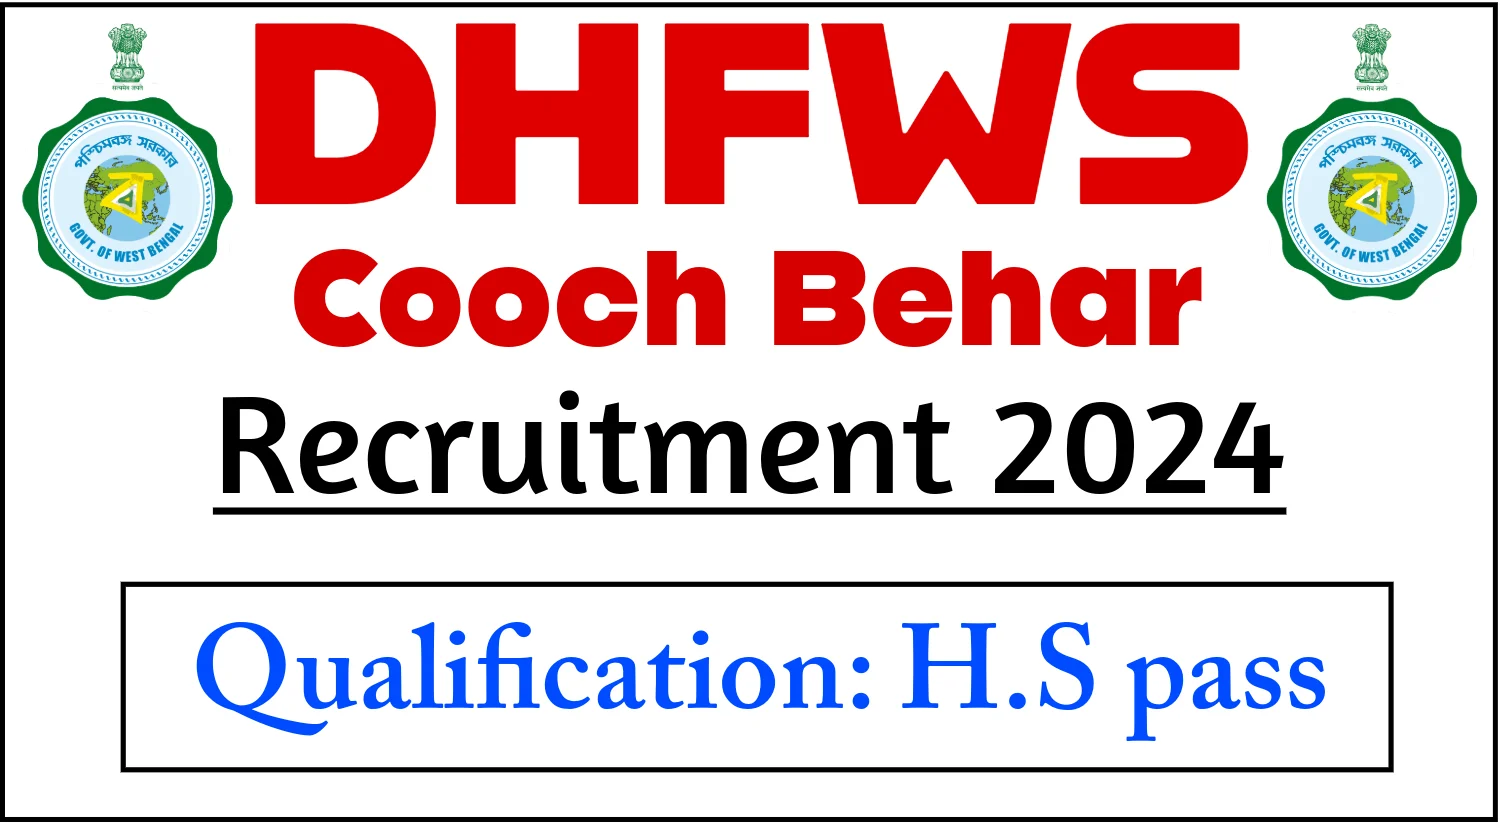 DHFWS Cooch Behar Recruitment 2024